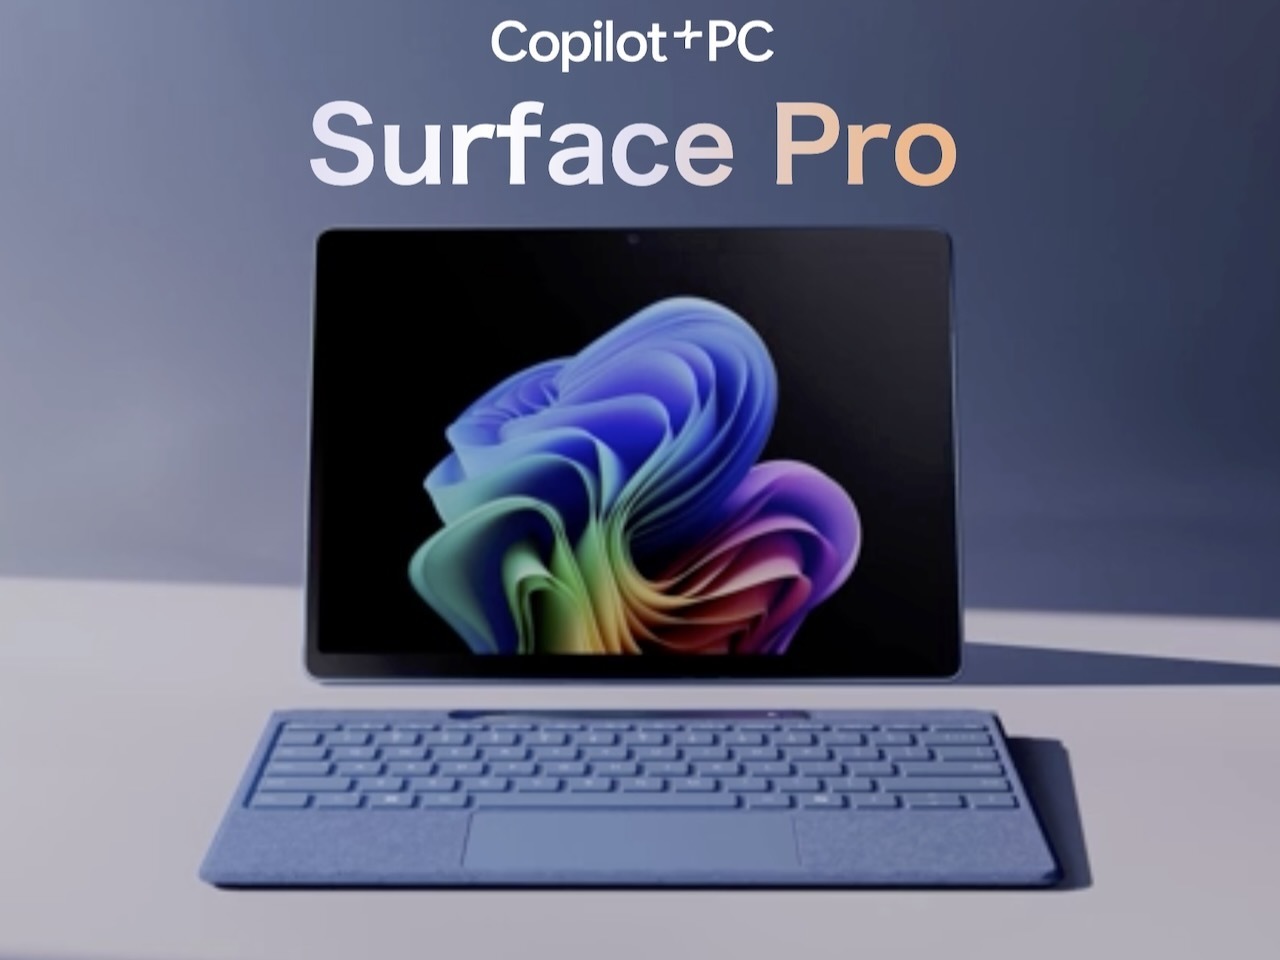 Copilot+ PCsの1つ「Surface Pro」